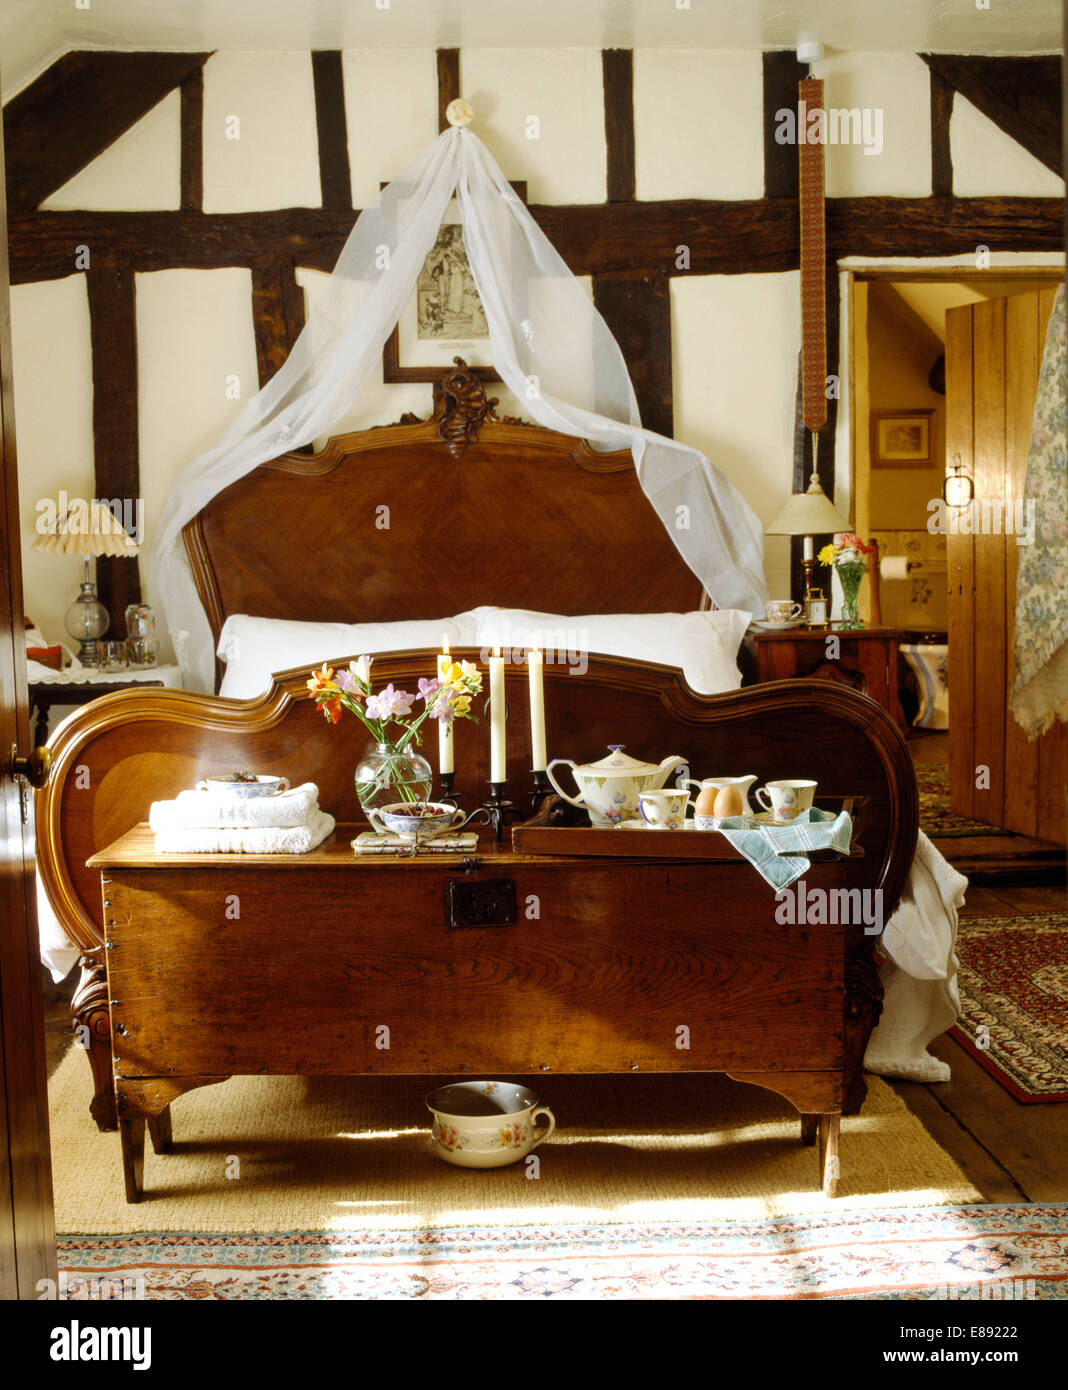 Frühstückstablett auf antiken Holzkiste am Fuße des antikes Bett mit weißen Voile Vorhänge in Land-Schlafzimmer Stockfoto